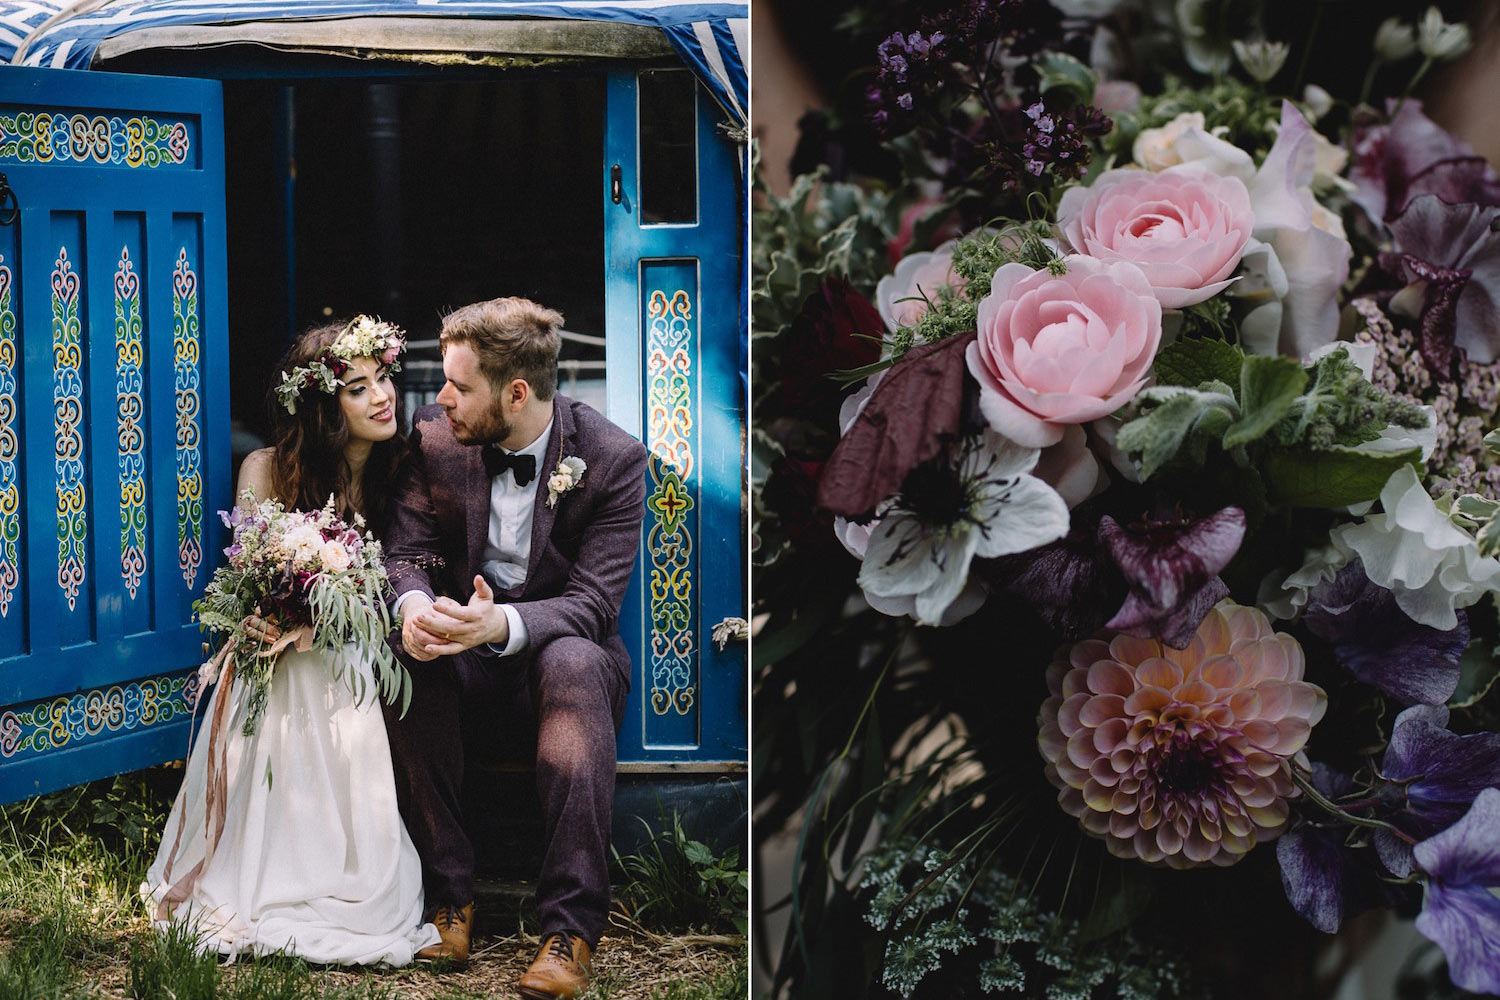 Bohemian wedding couple outside wedding yurt with flowers